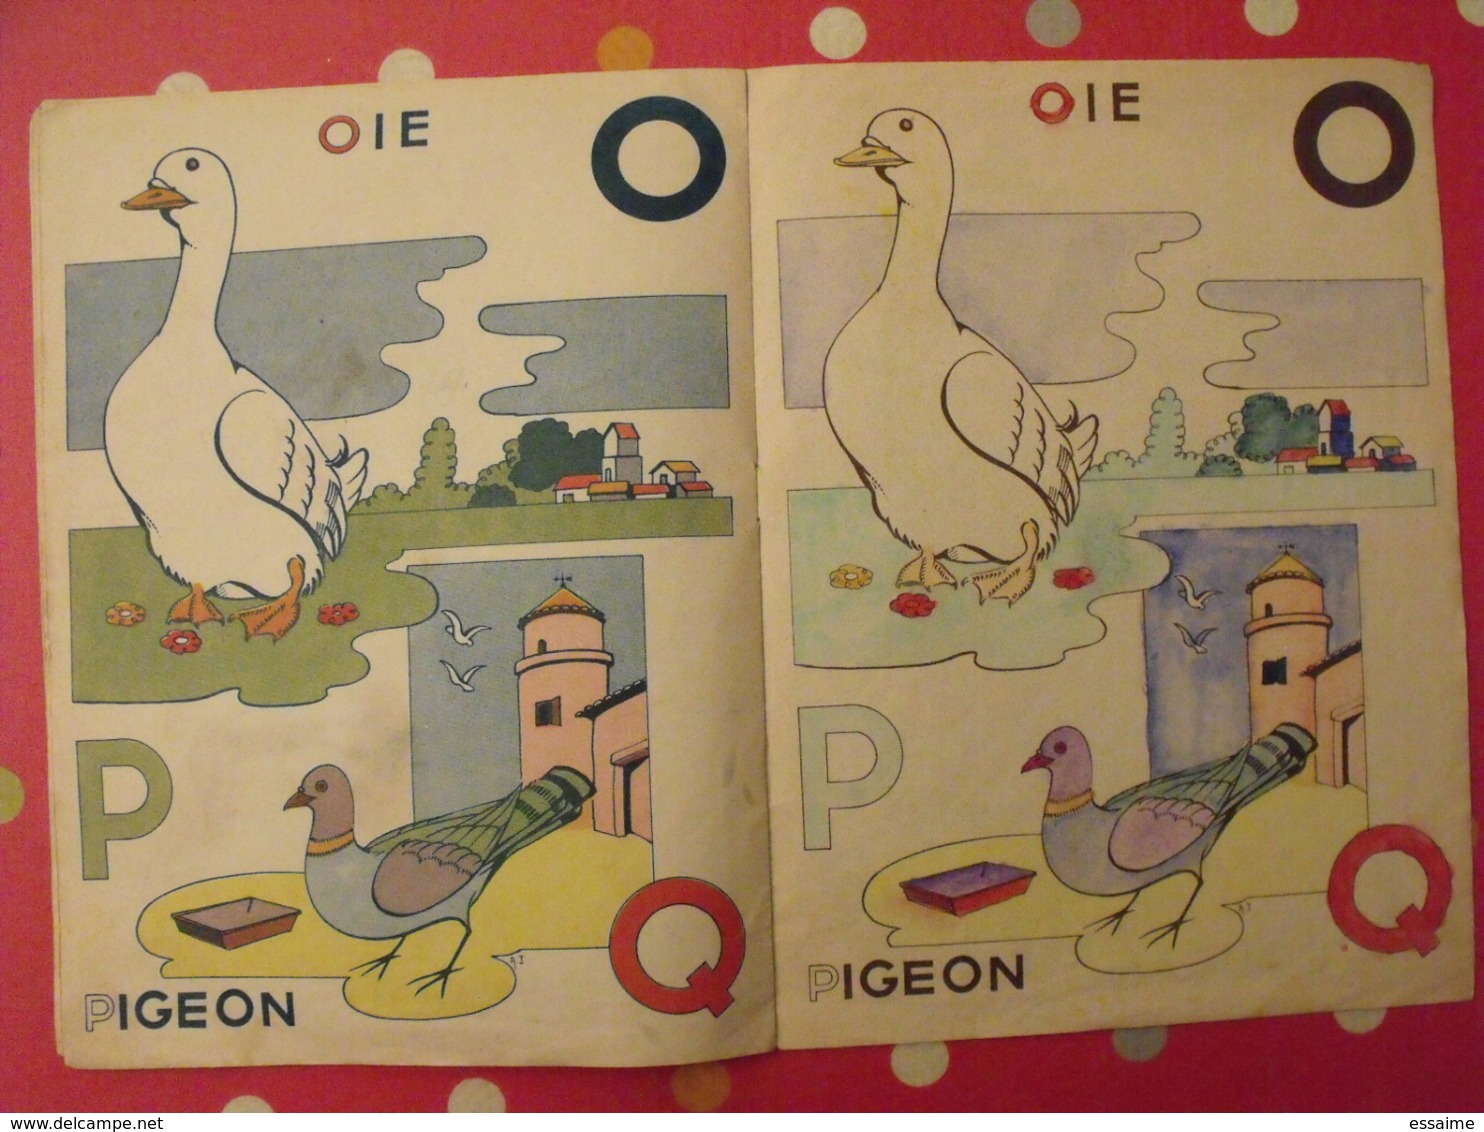 ABC à colorier (coloriages faits !). Jourcin. éditions Bias Paris 1946. abécédaire alphabet